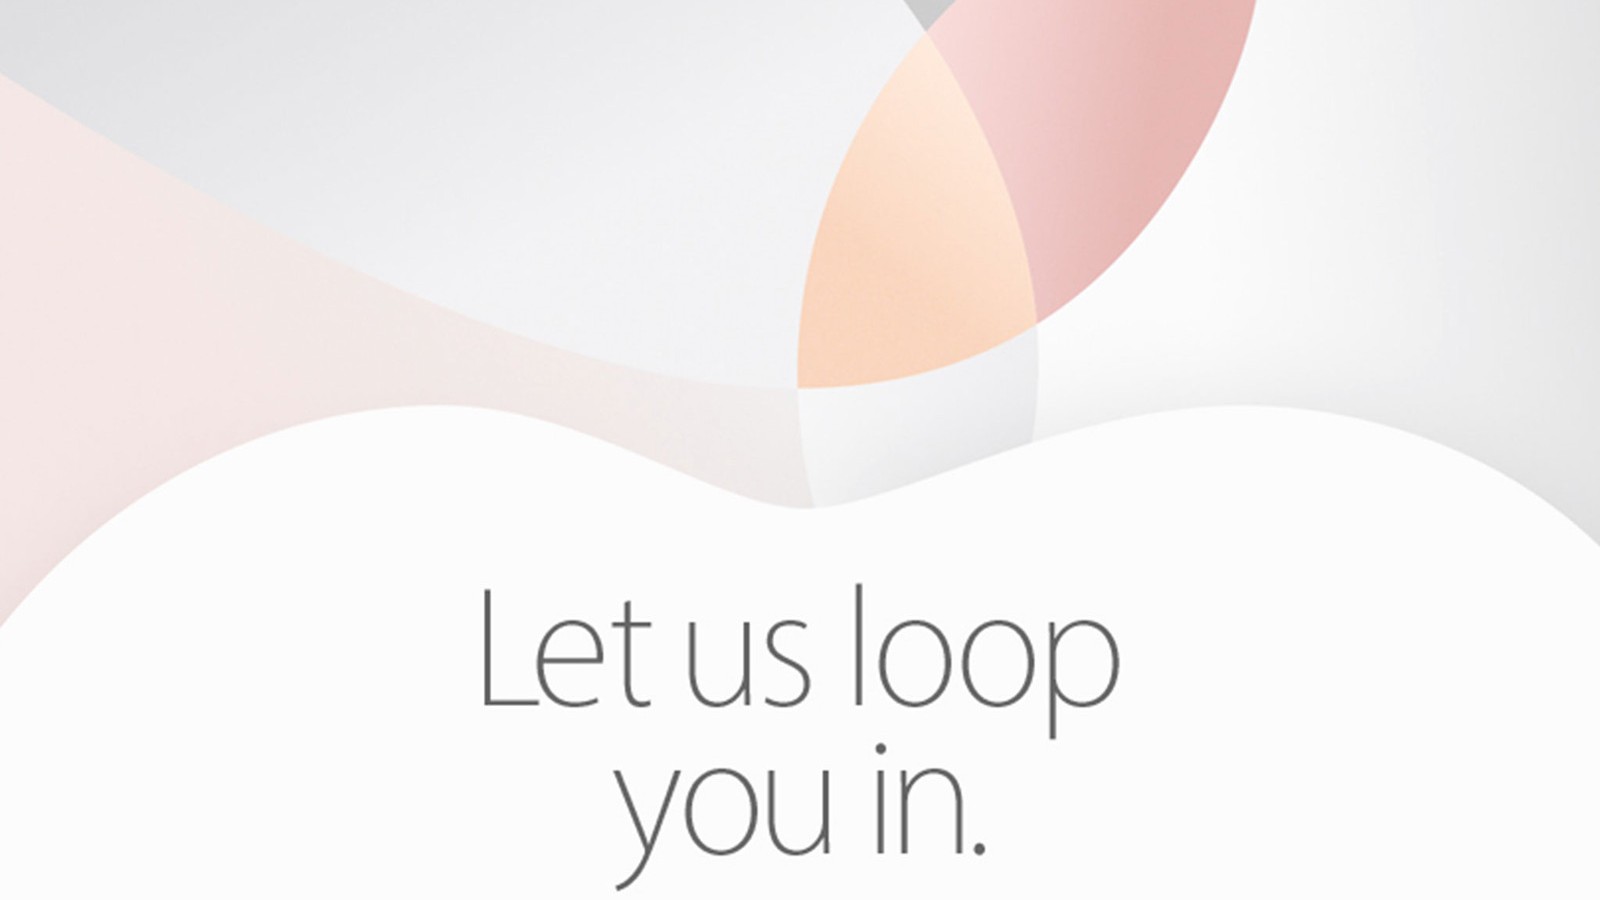 Что может значить фраза «Let us loop you in» из приглашения Apple